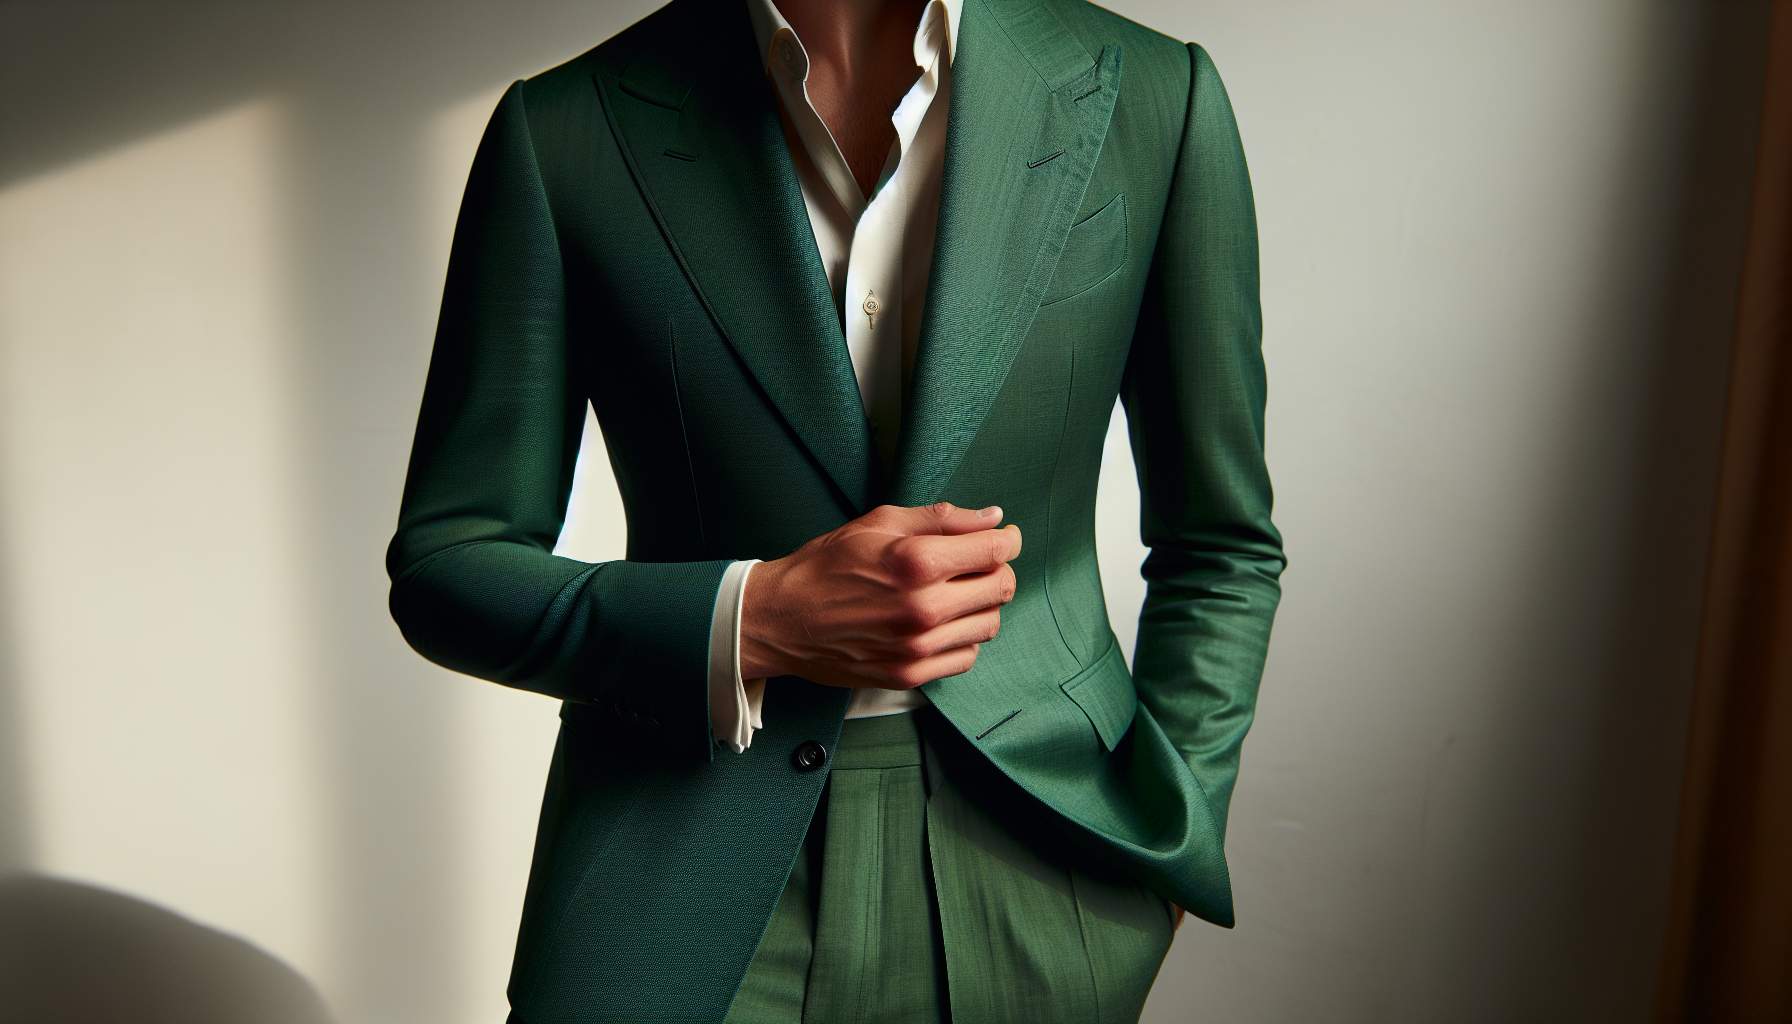 Veste Costume Verte Homme: L'Art d'Arborer l'Élégance au Quotidien